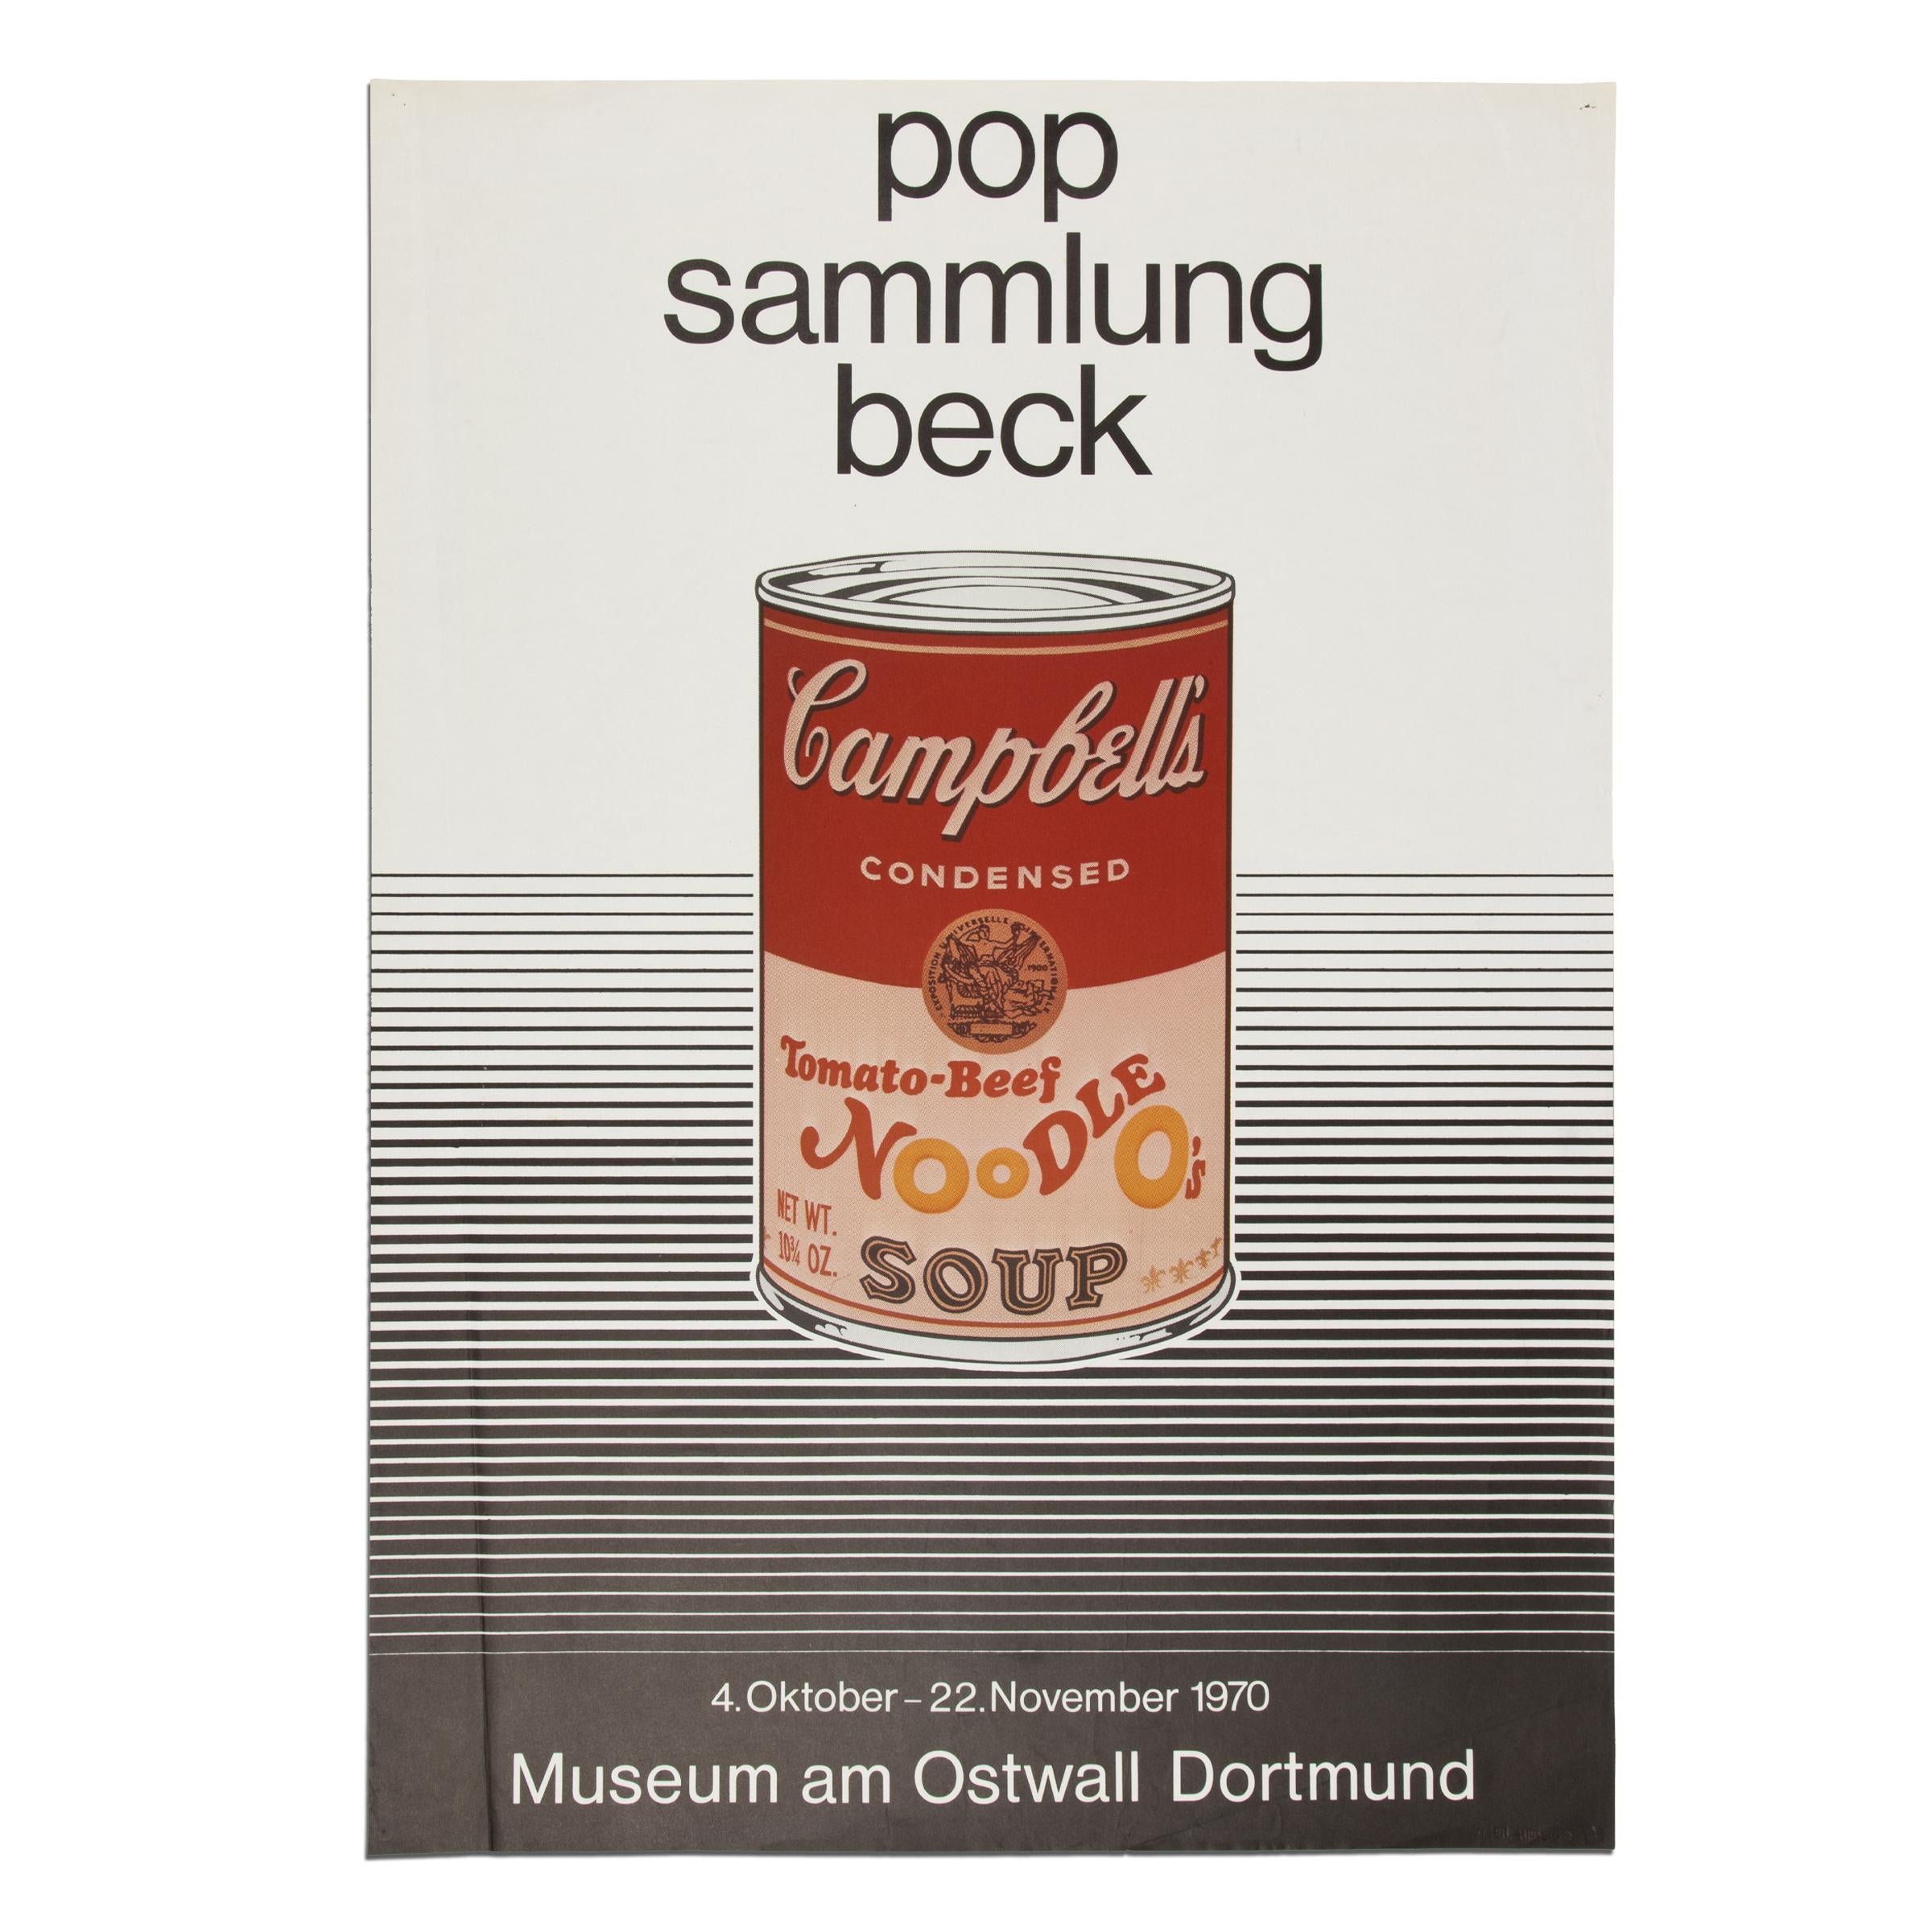 (after) Andy Warhol Print – Pop-Art-Druck, Original-Ausstellungsplakat, 1970, Pop-Sammlung Beck